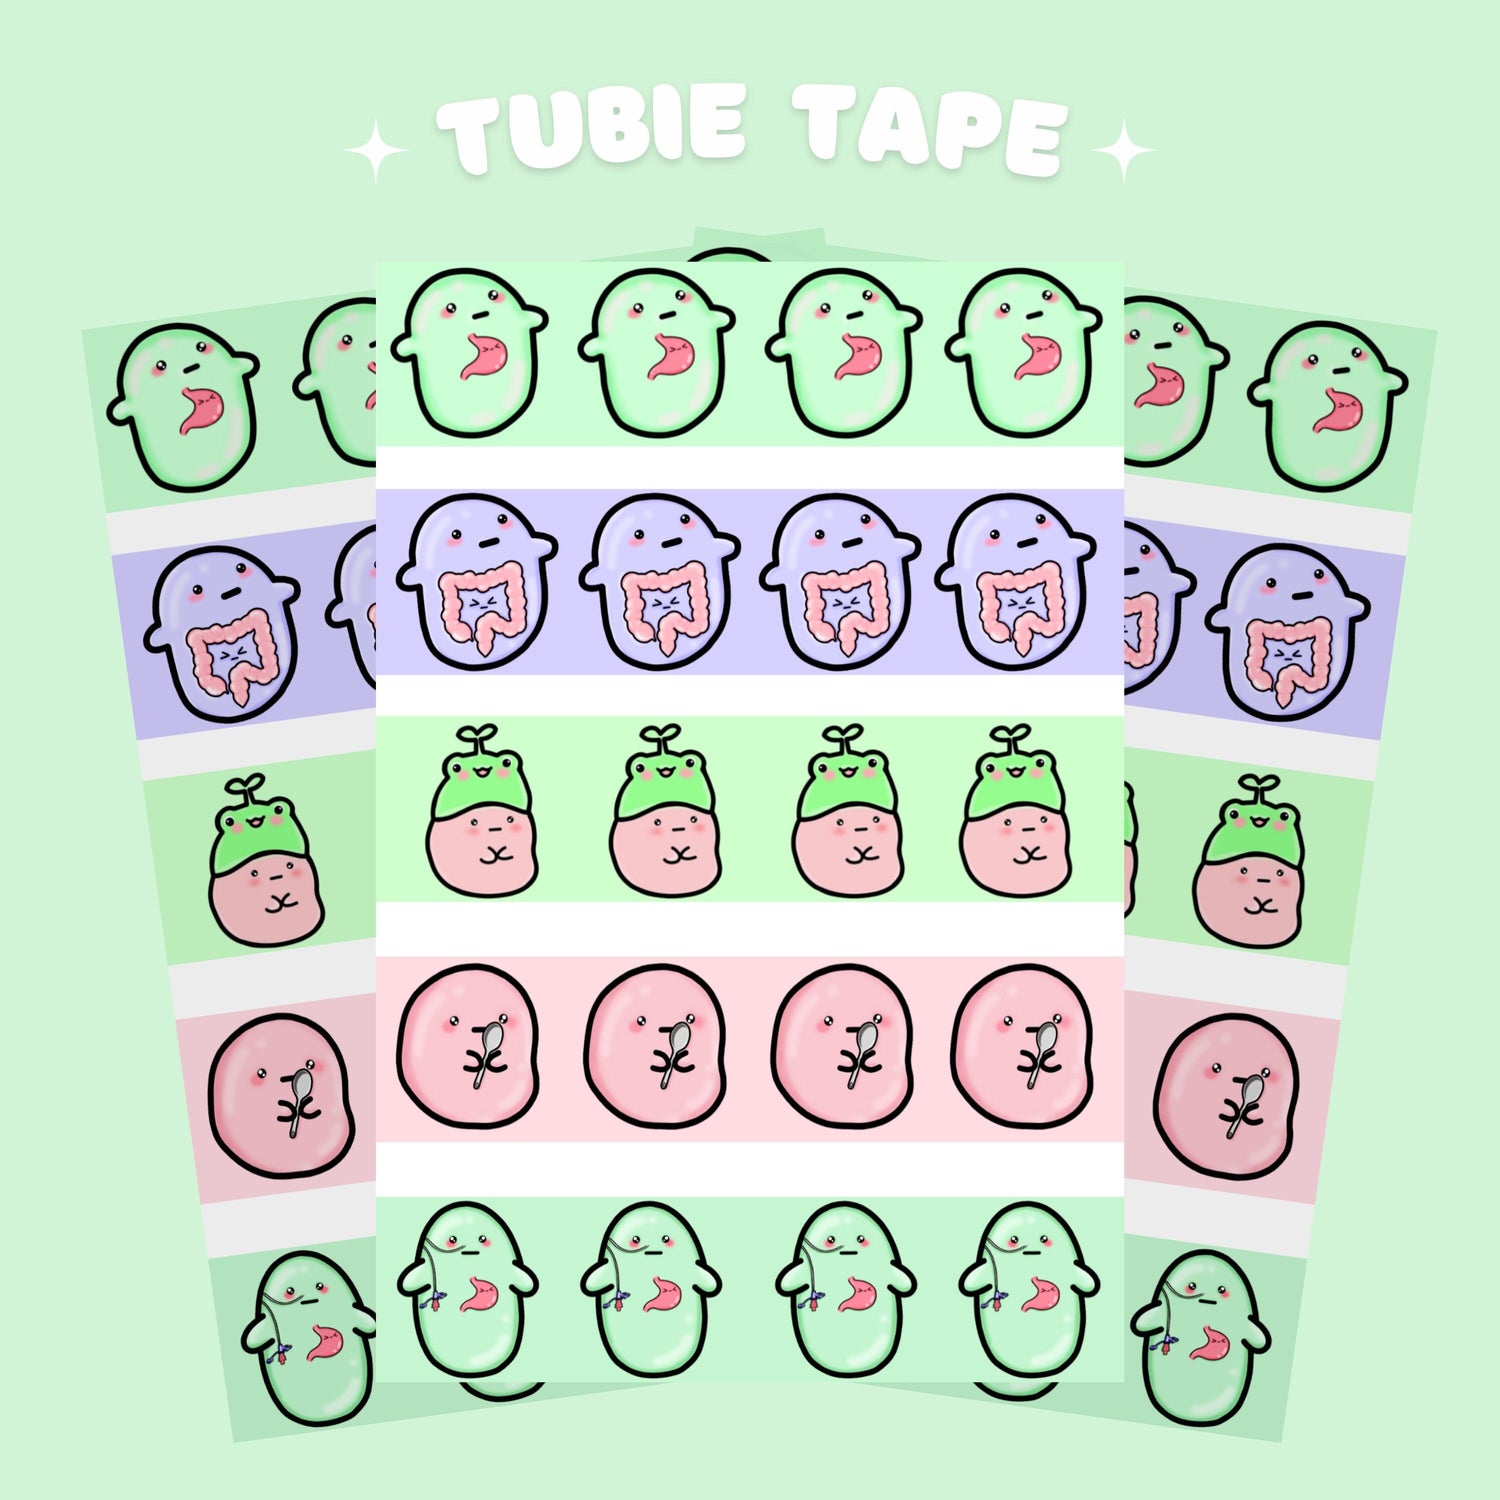 Tube tape